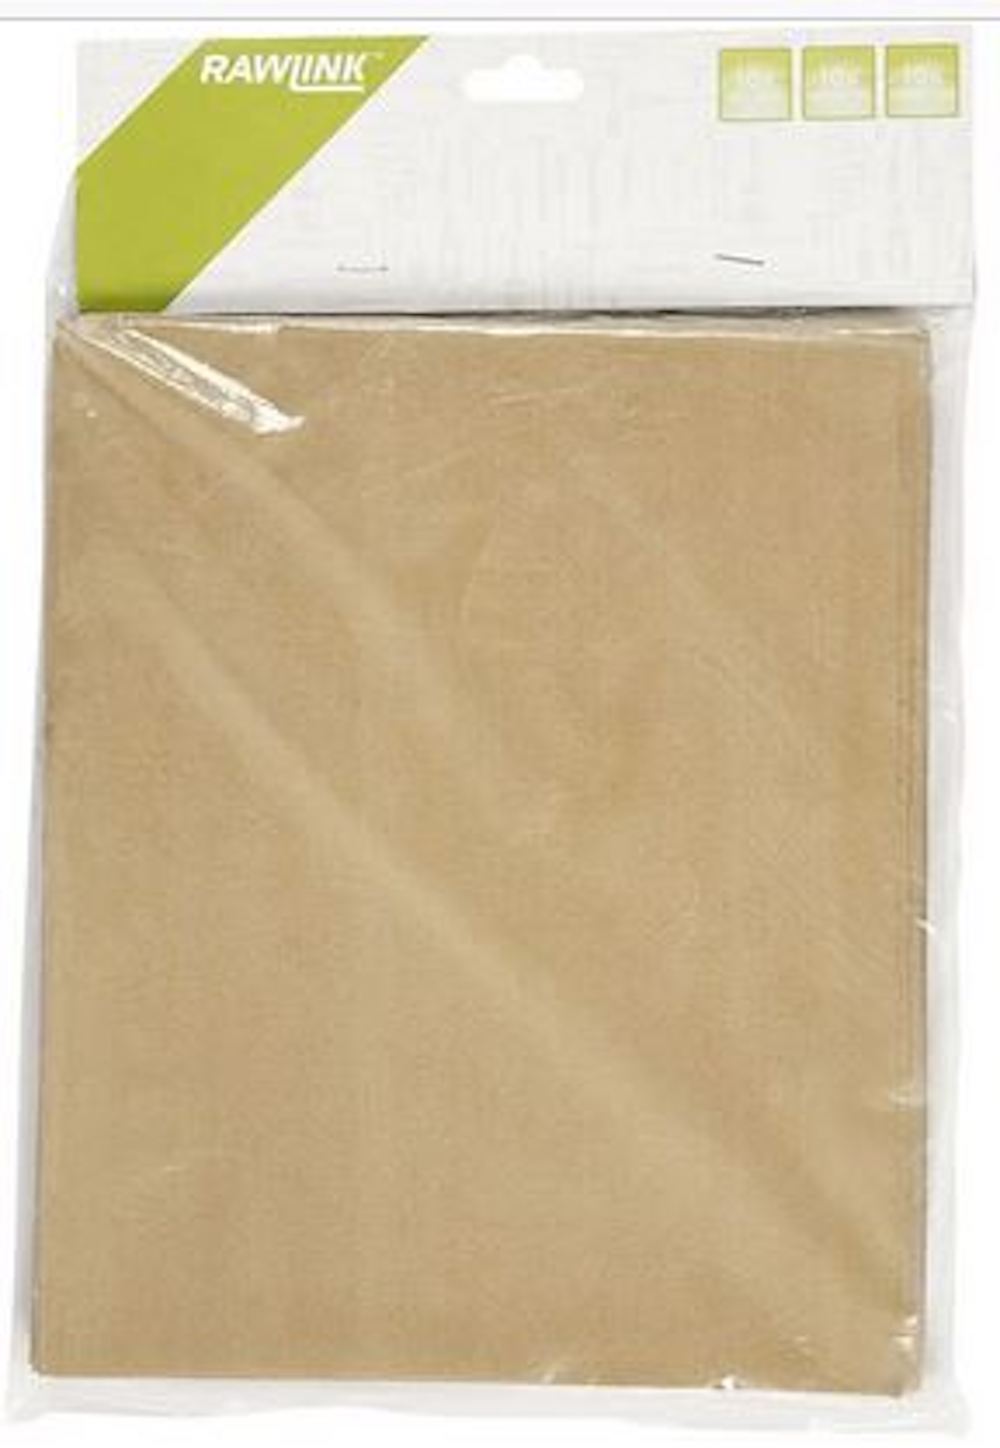 Schleifpapier Sandpapier, Sortiment, 30 Bl. sort. A4 / 1 Pck.